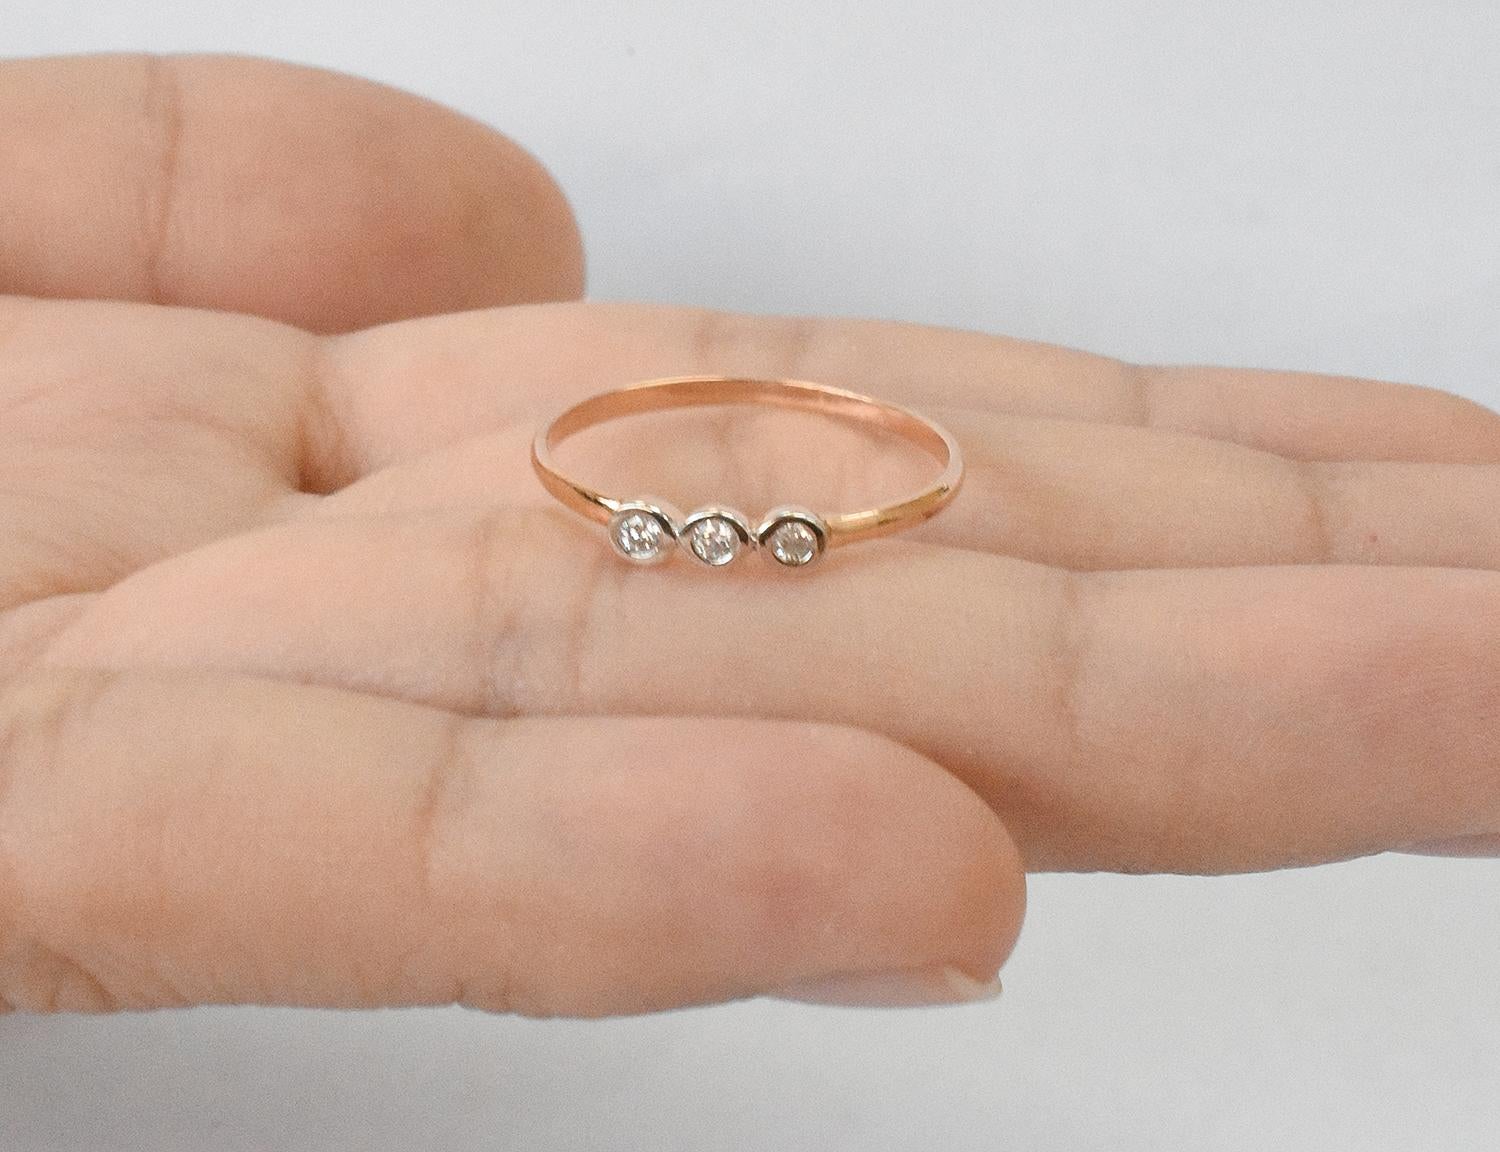 For Sale:  14k Gold Diamond 1.9 mm Ring Bezel Setting Three Diamond Ring Trio Diamond Ring 7